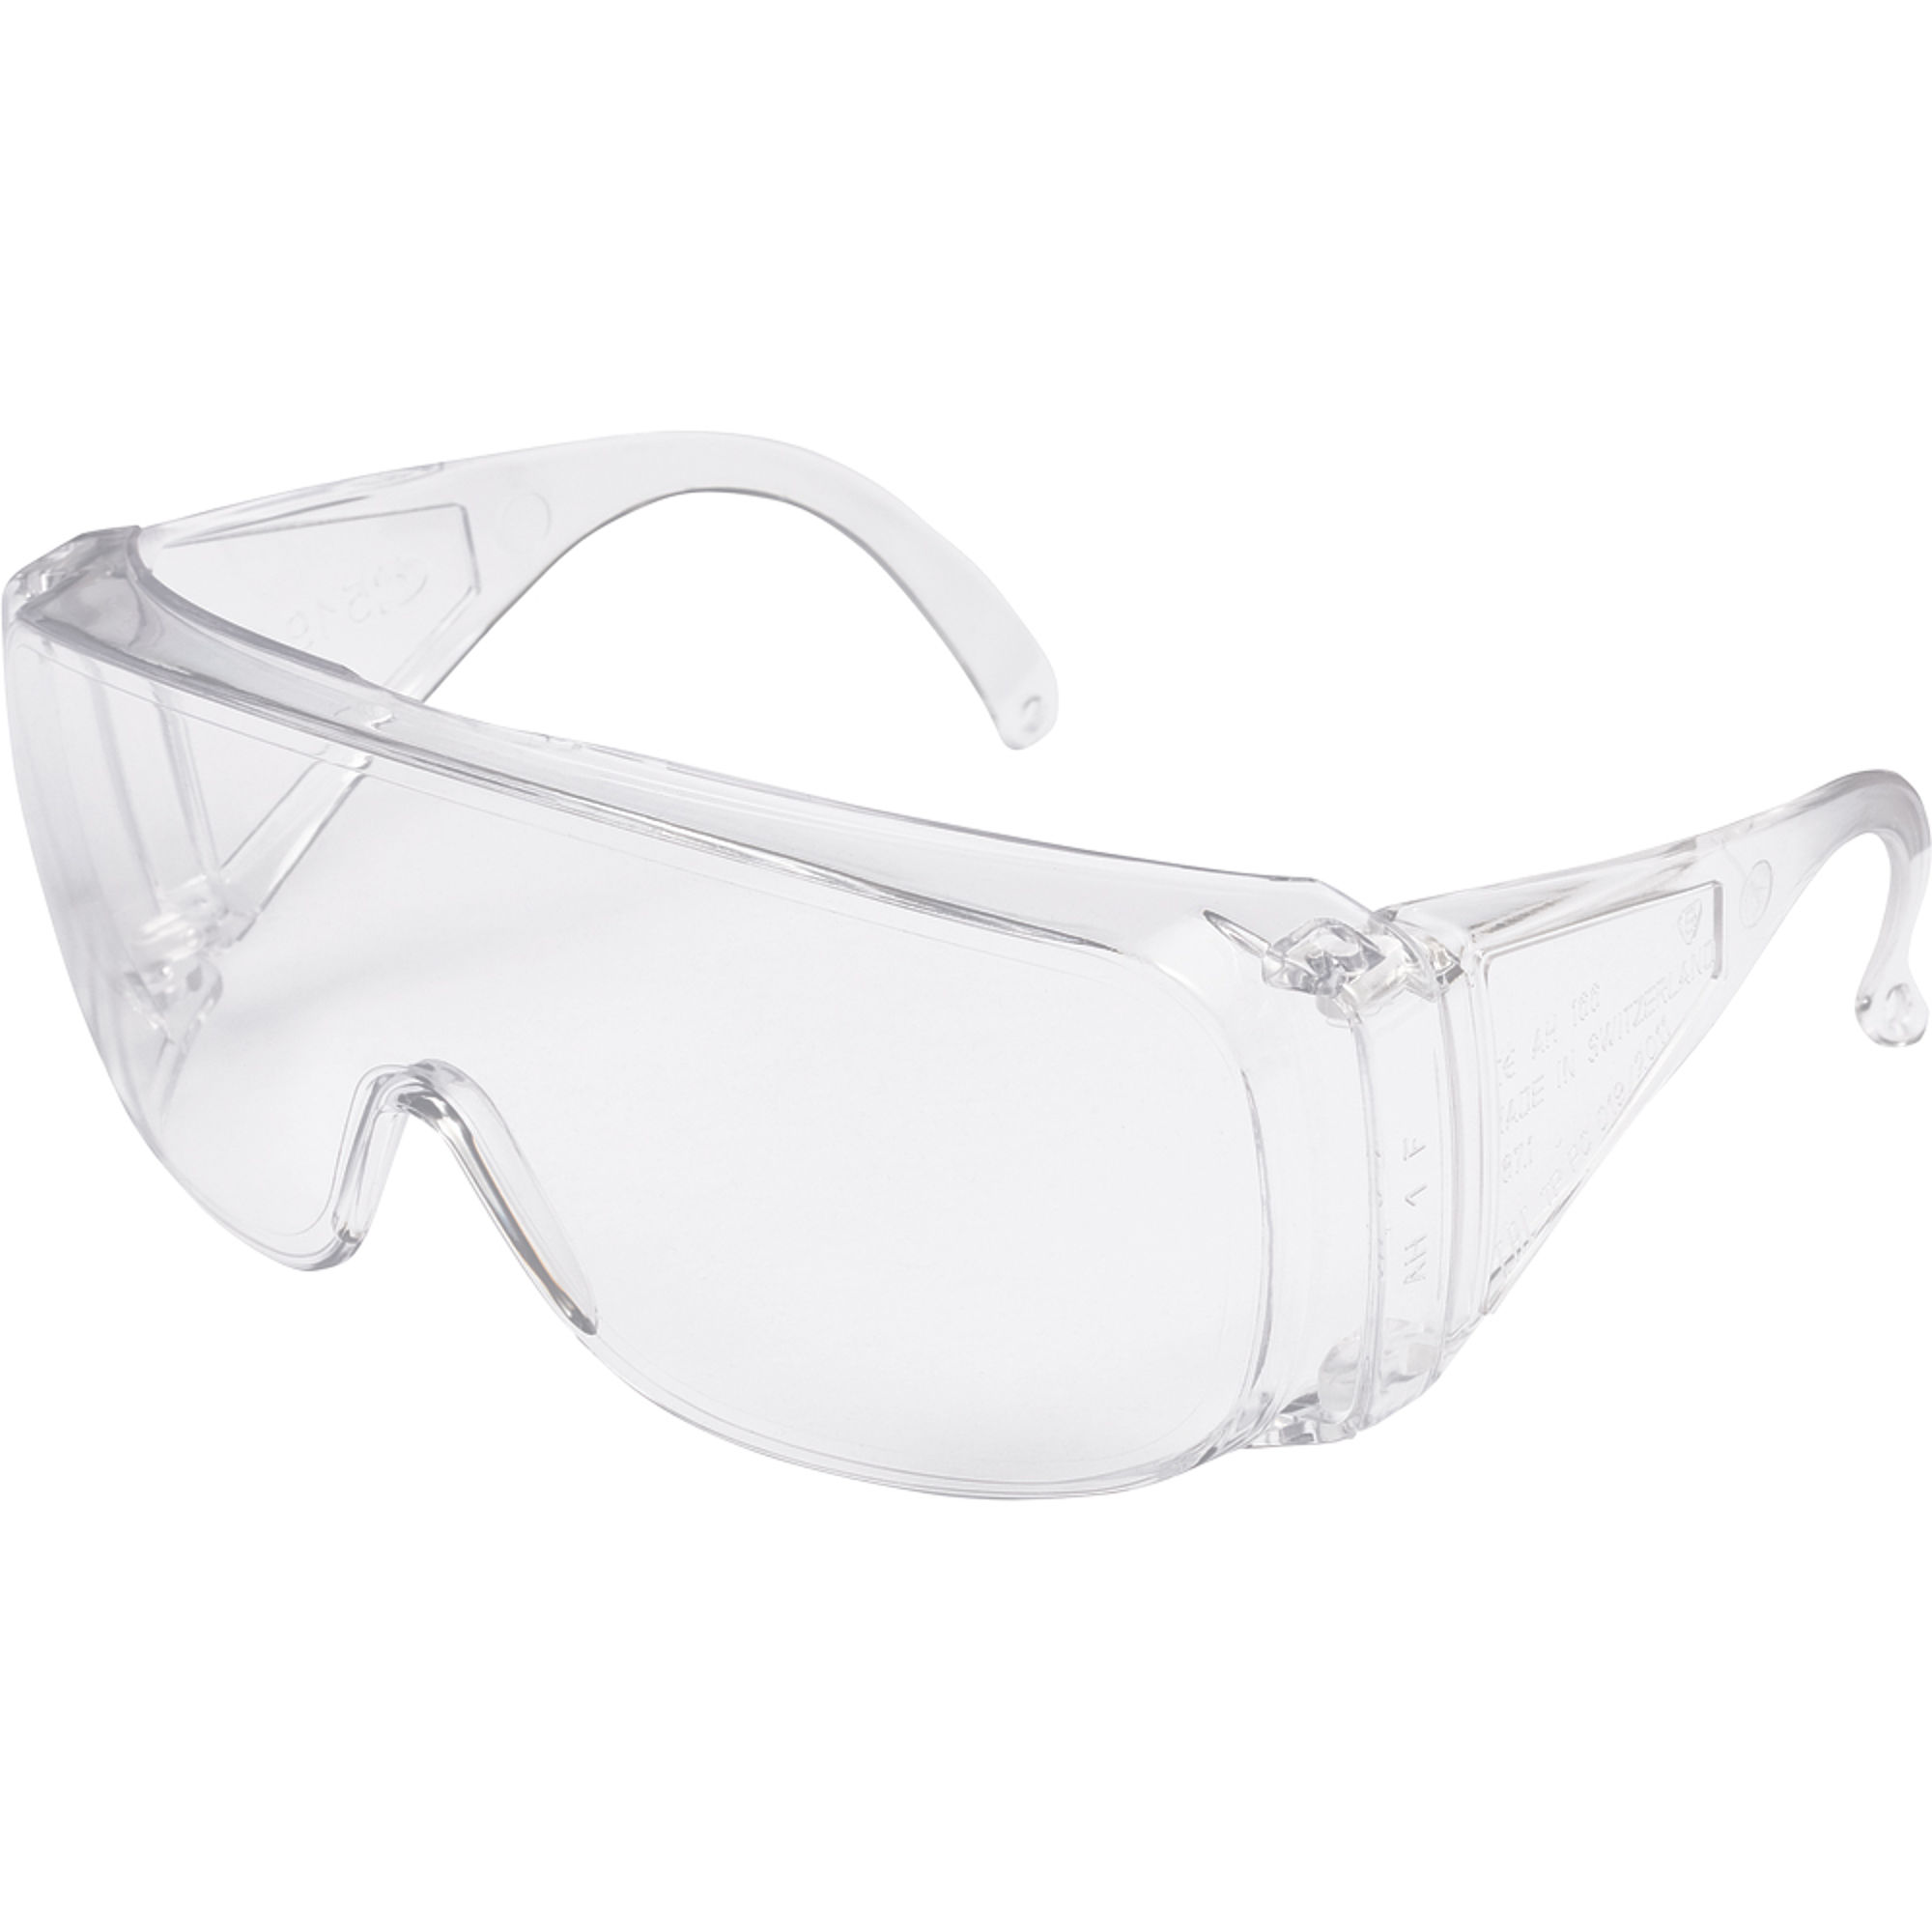 Basic szemüveg fölött is viselhető védőszemüveg